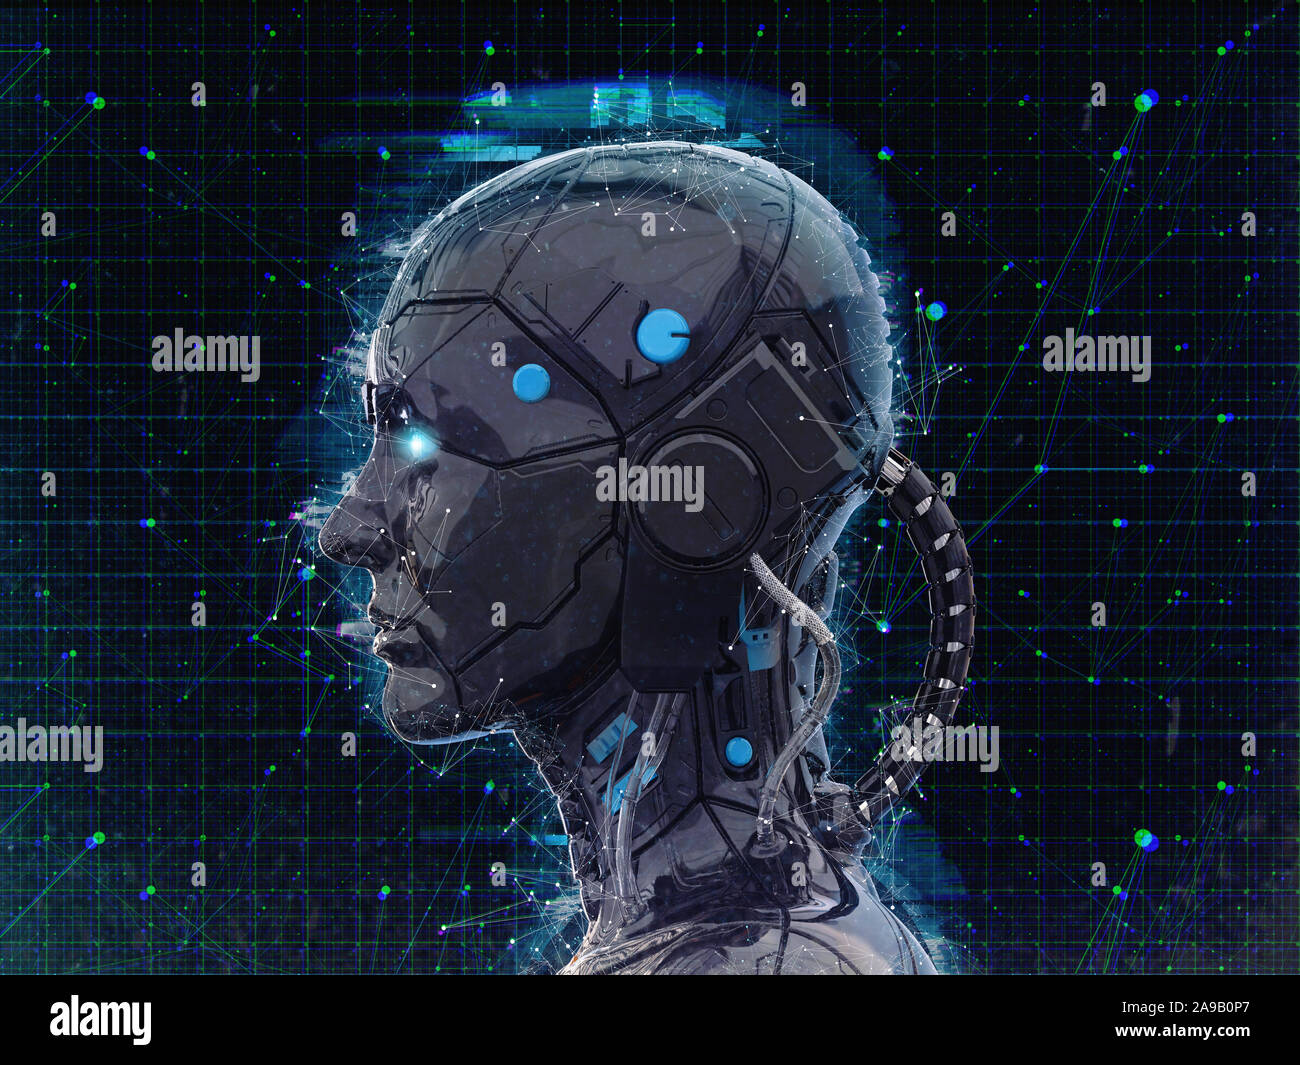 Nền tảng công nghệ 3D với hình ảnh nữ robot Cyborg và Android - Humanoid...: Chào mừng đến với thế giới công nghệ 3D tuyệt vời với hình ảnh nữ robot Cyborg và Android - Humanoid. Hãy cùng khám phá một thế giới hoàn toàn mới với công nghệ 3D sắc nét và chân thực, giúp bạn cảm nhận được hành tinh của những kỹ thuật viên tài năng.